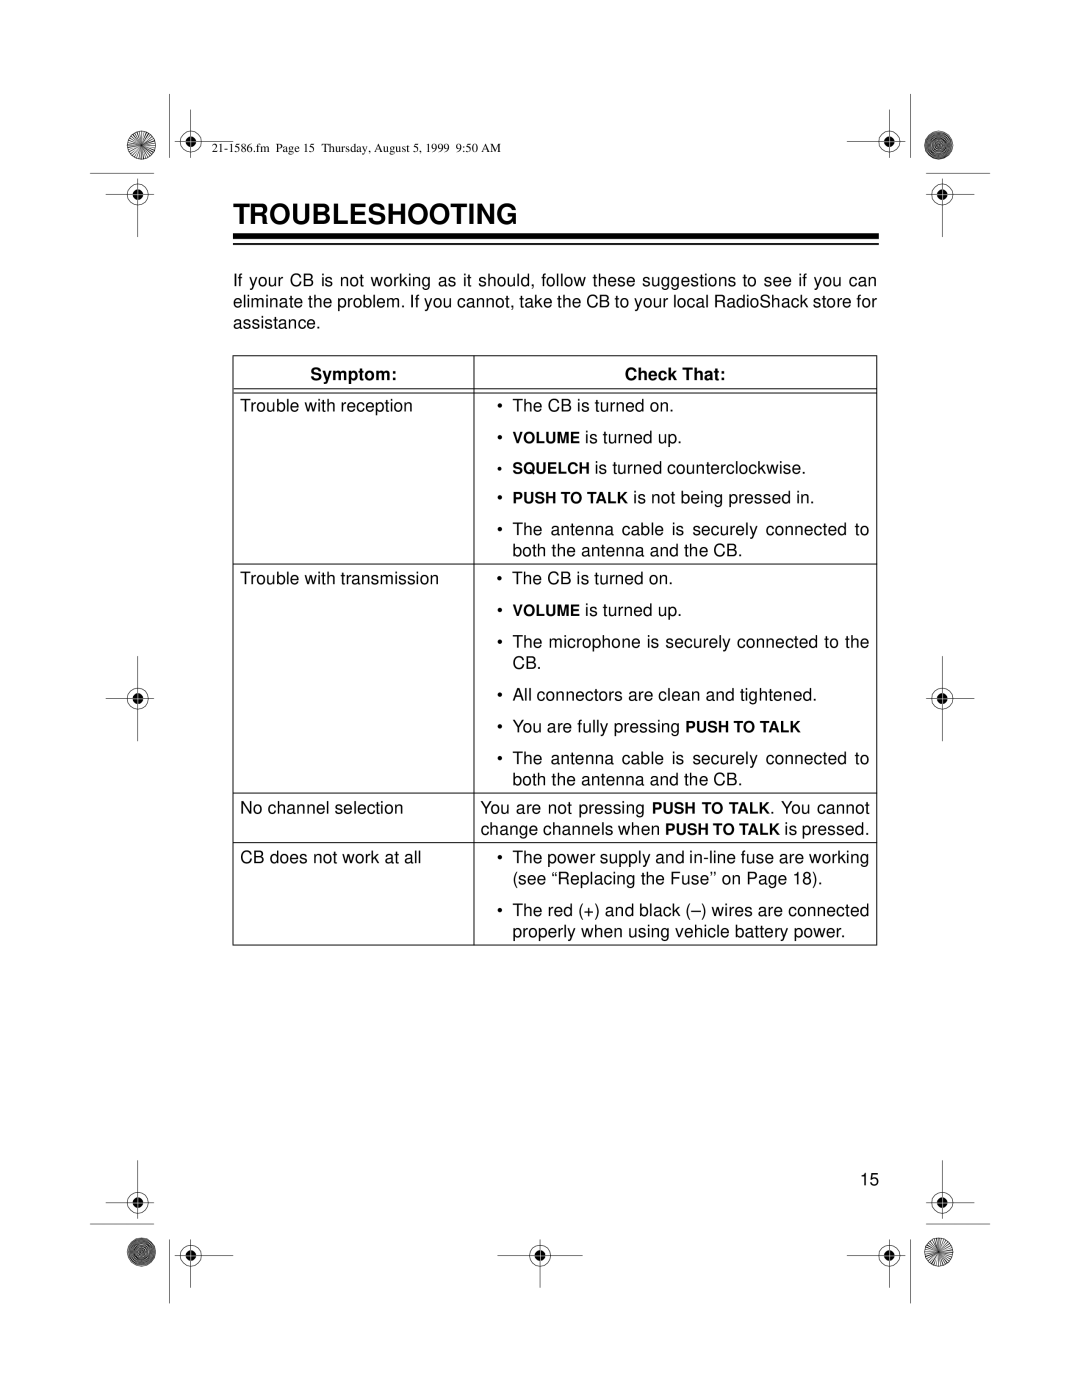 Radio Shack TRC-442 owner manual Troubleshooting, Symptom, Check That 